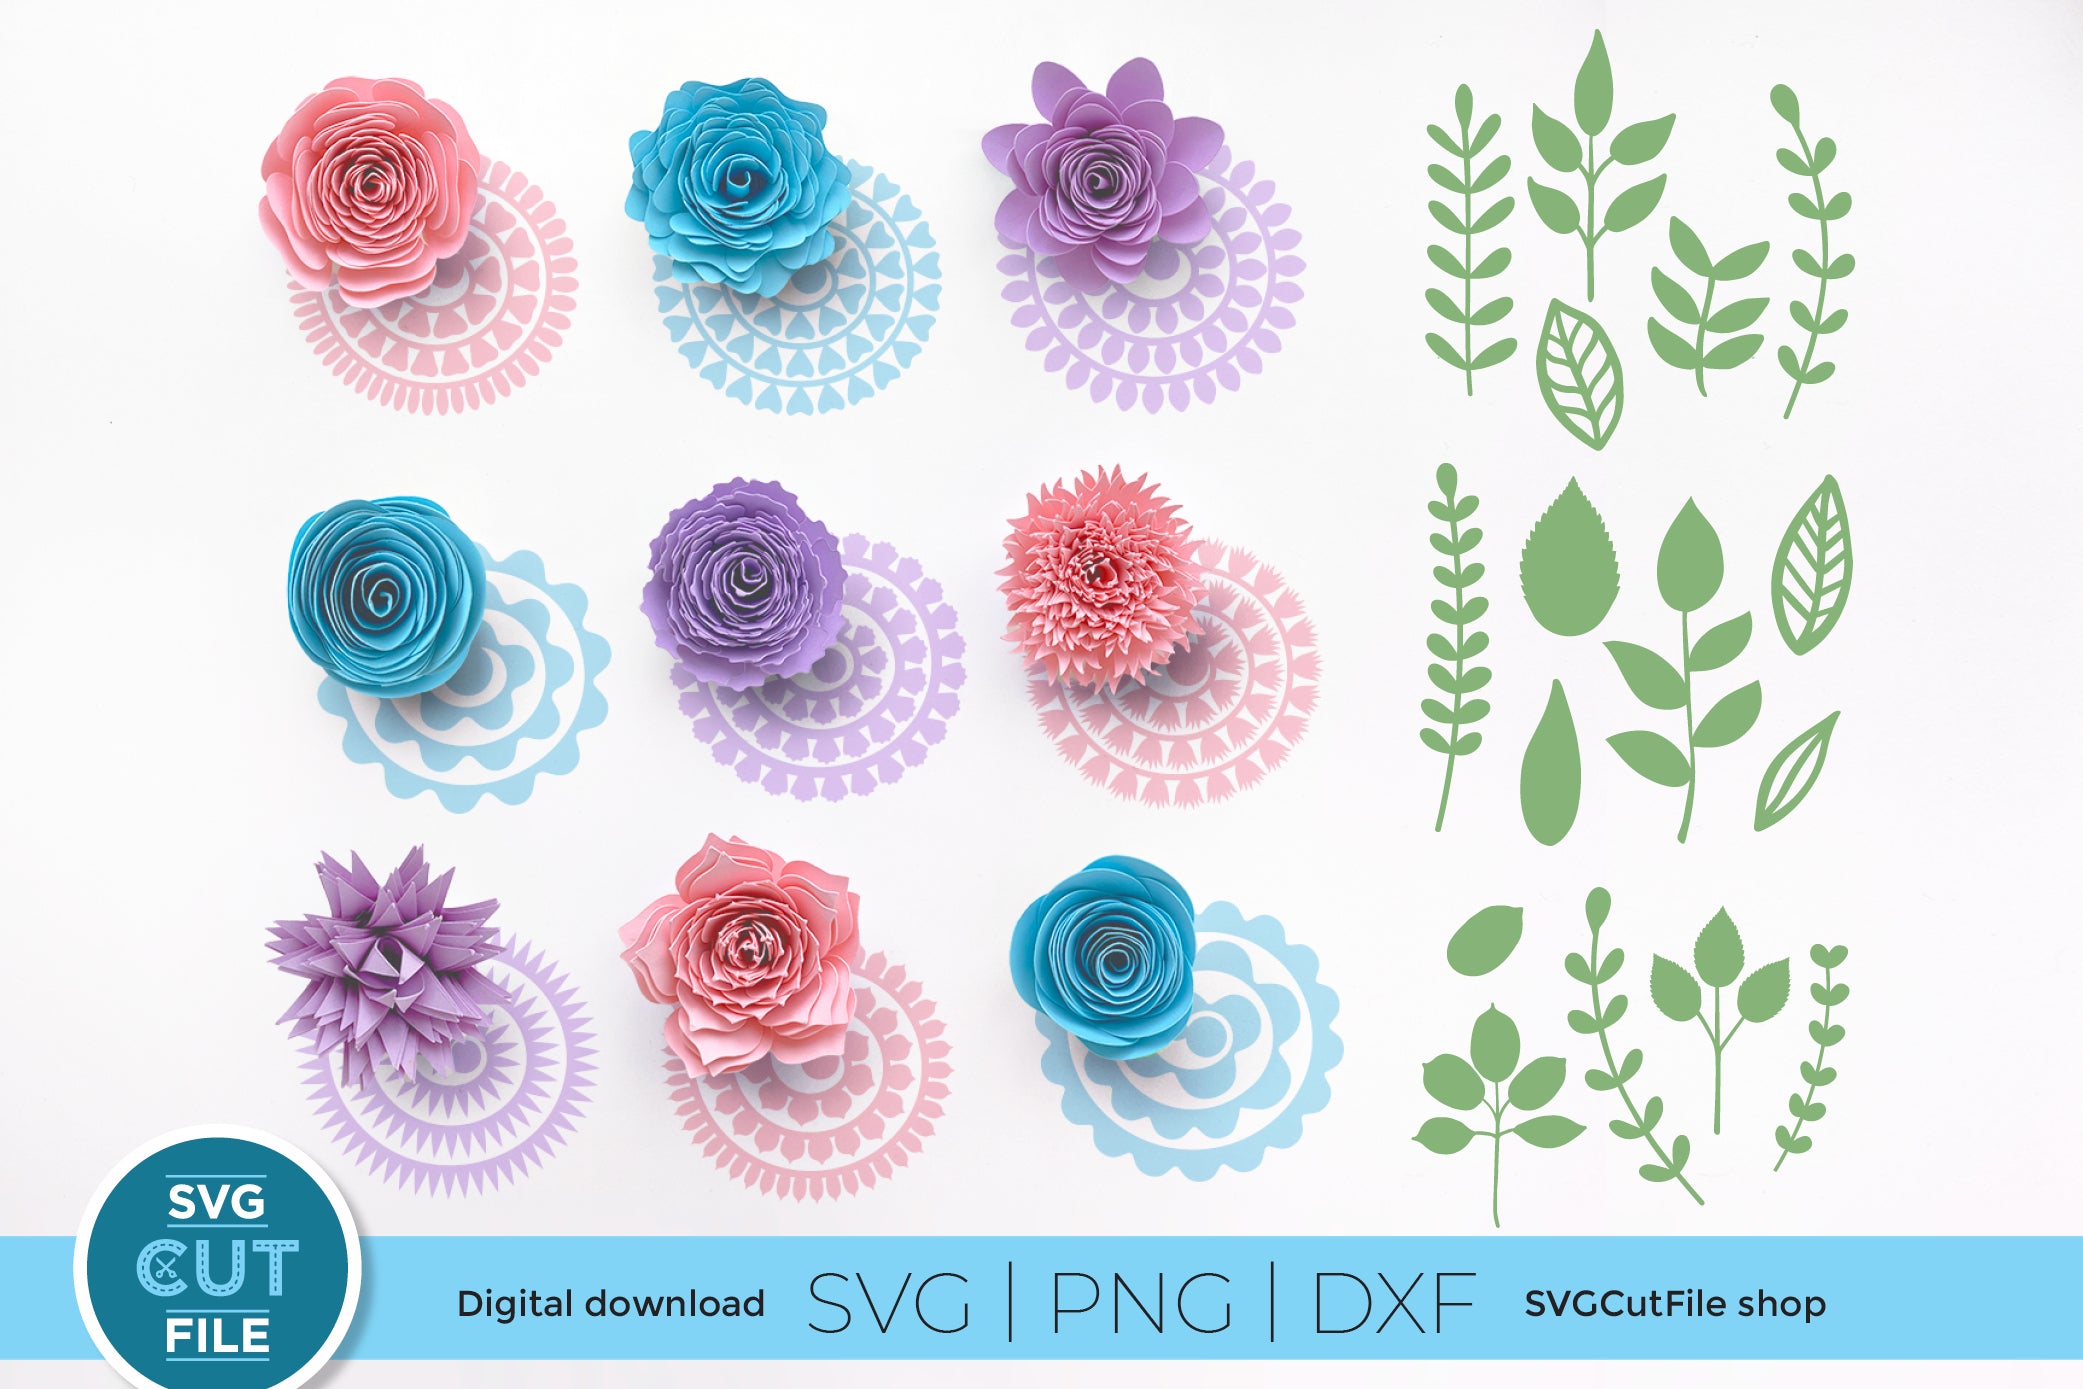 Cricut paper cut floral card SVG bundle - So Fontsy